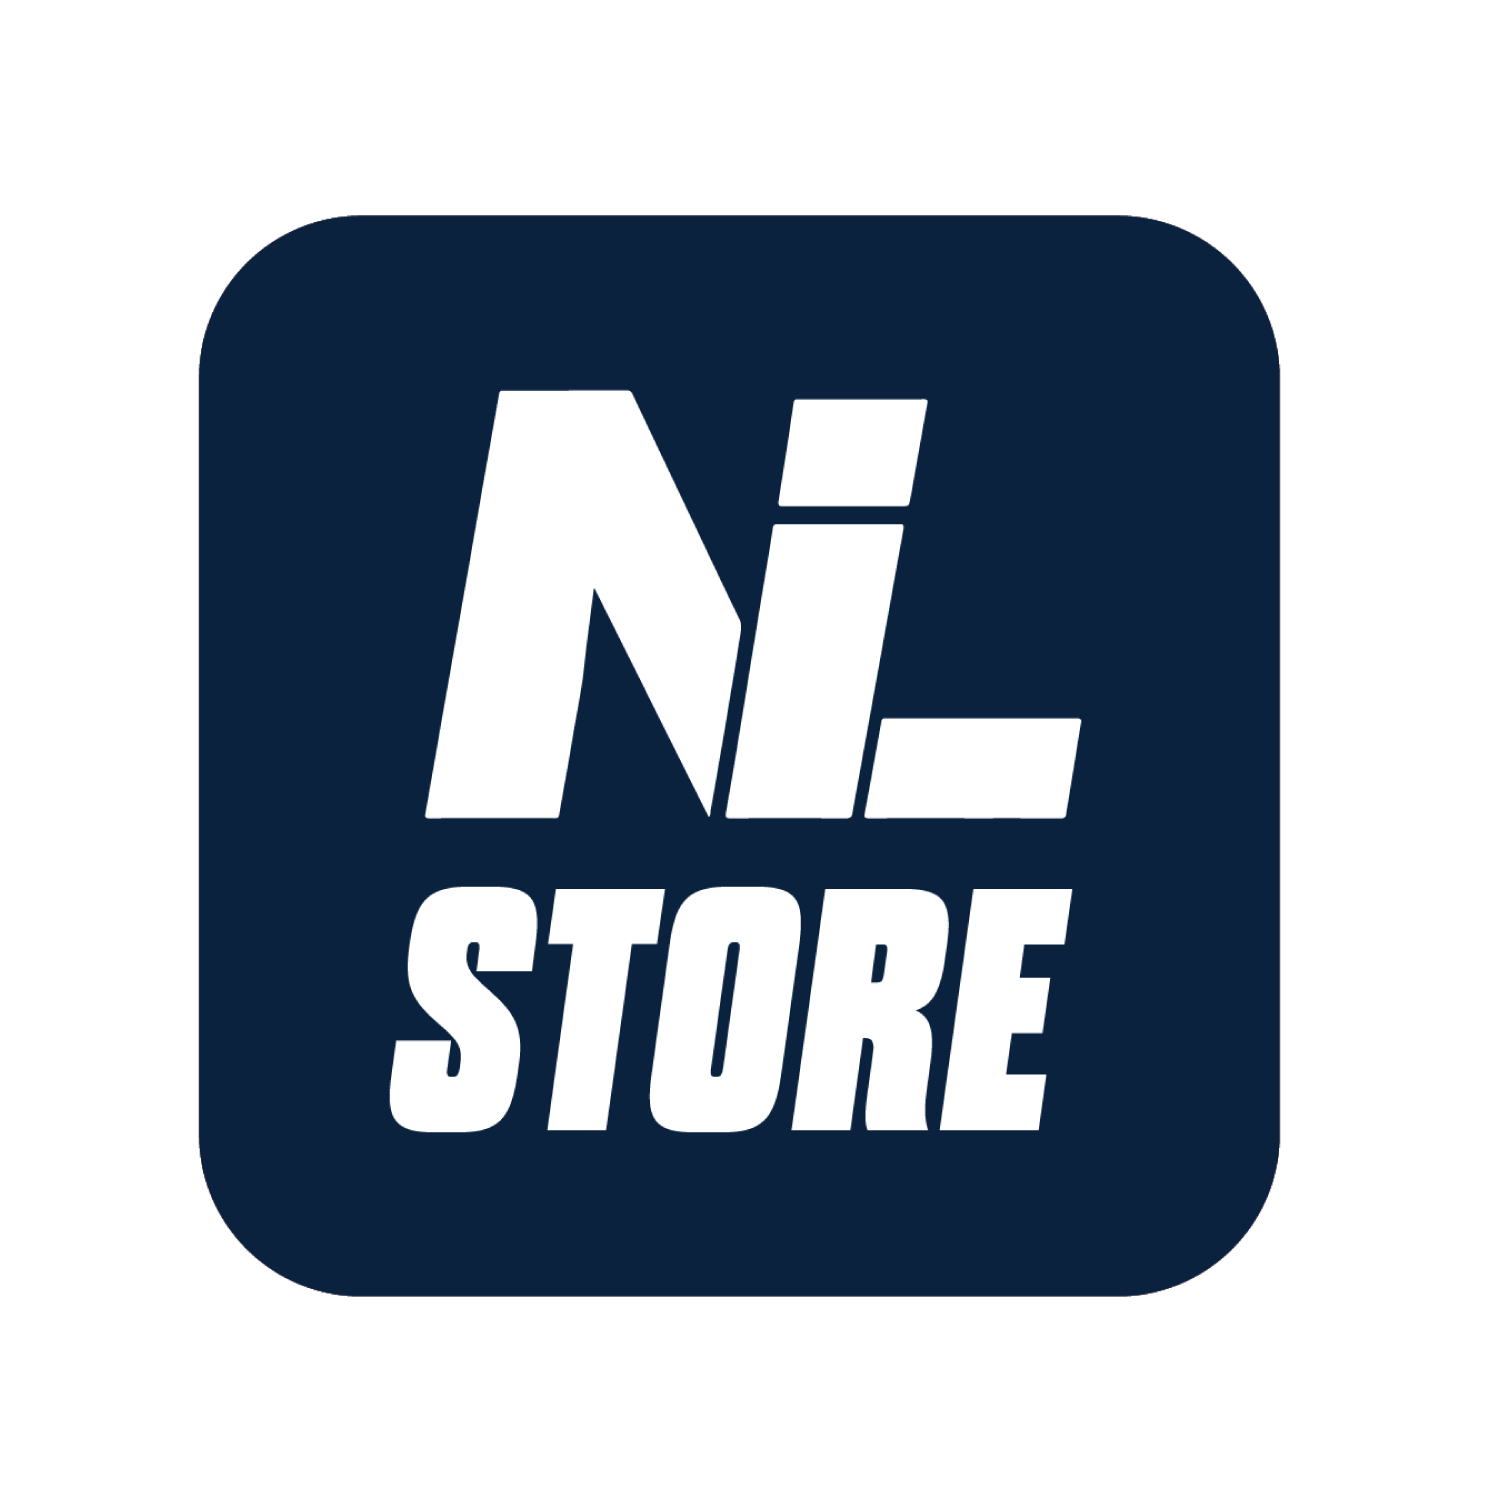 Navy Men's Basketball UConn Jersey – The UConn NIL Store